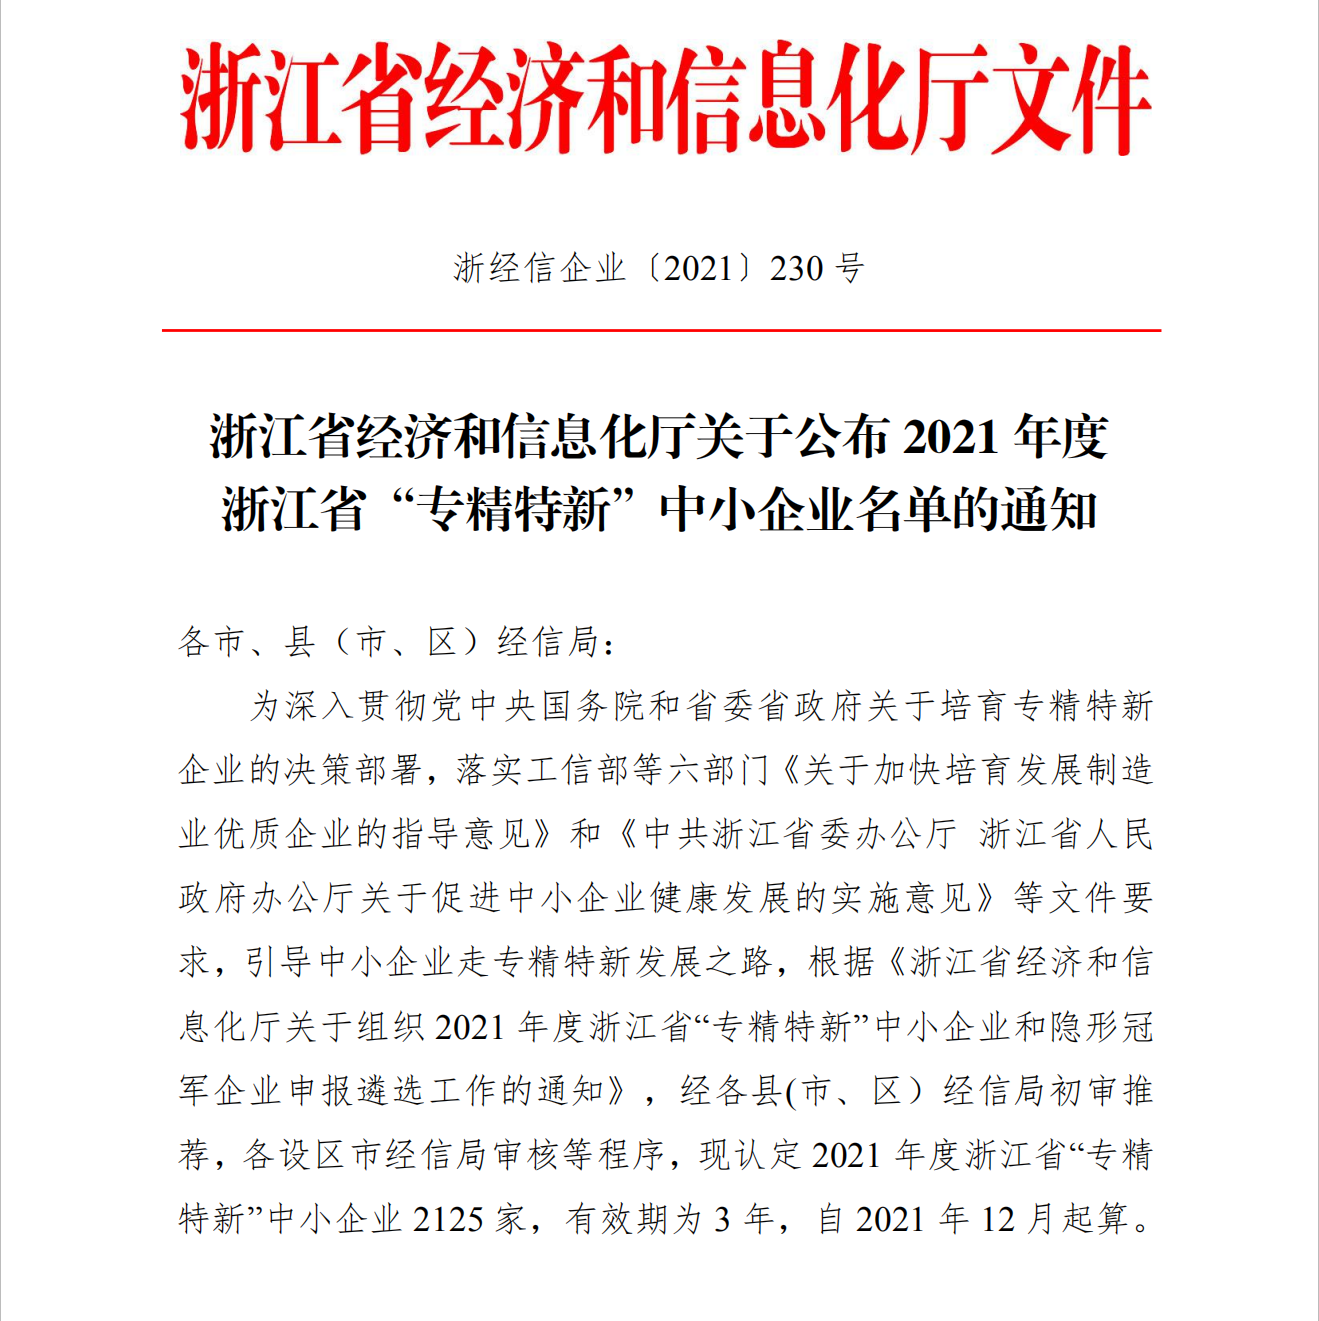 日风电气被认定为2021年度浙江省“隐形冠军”企业